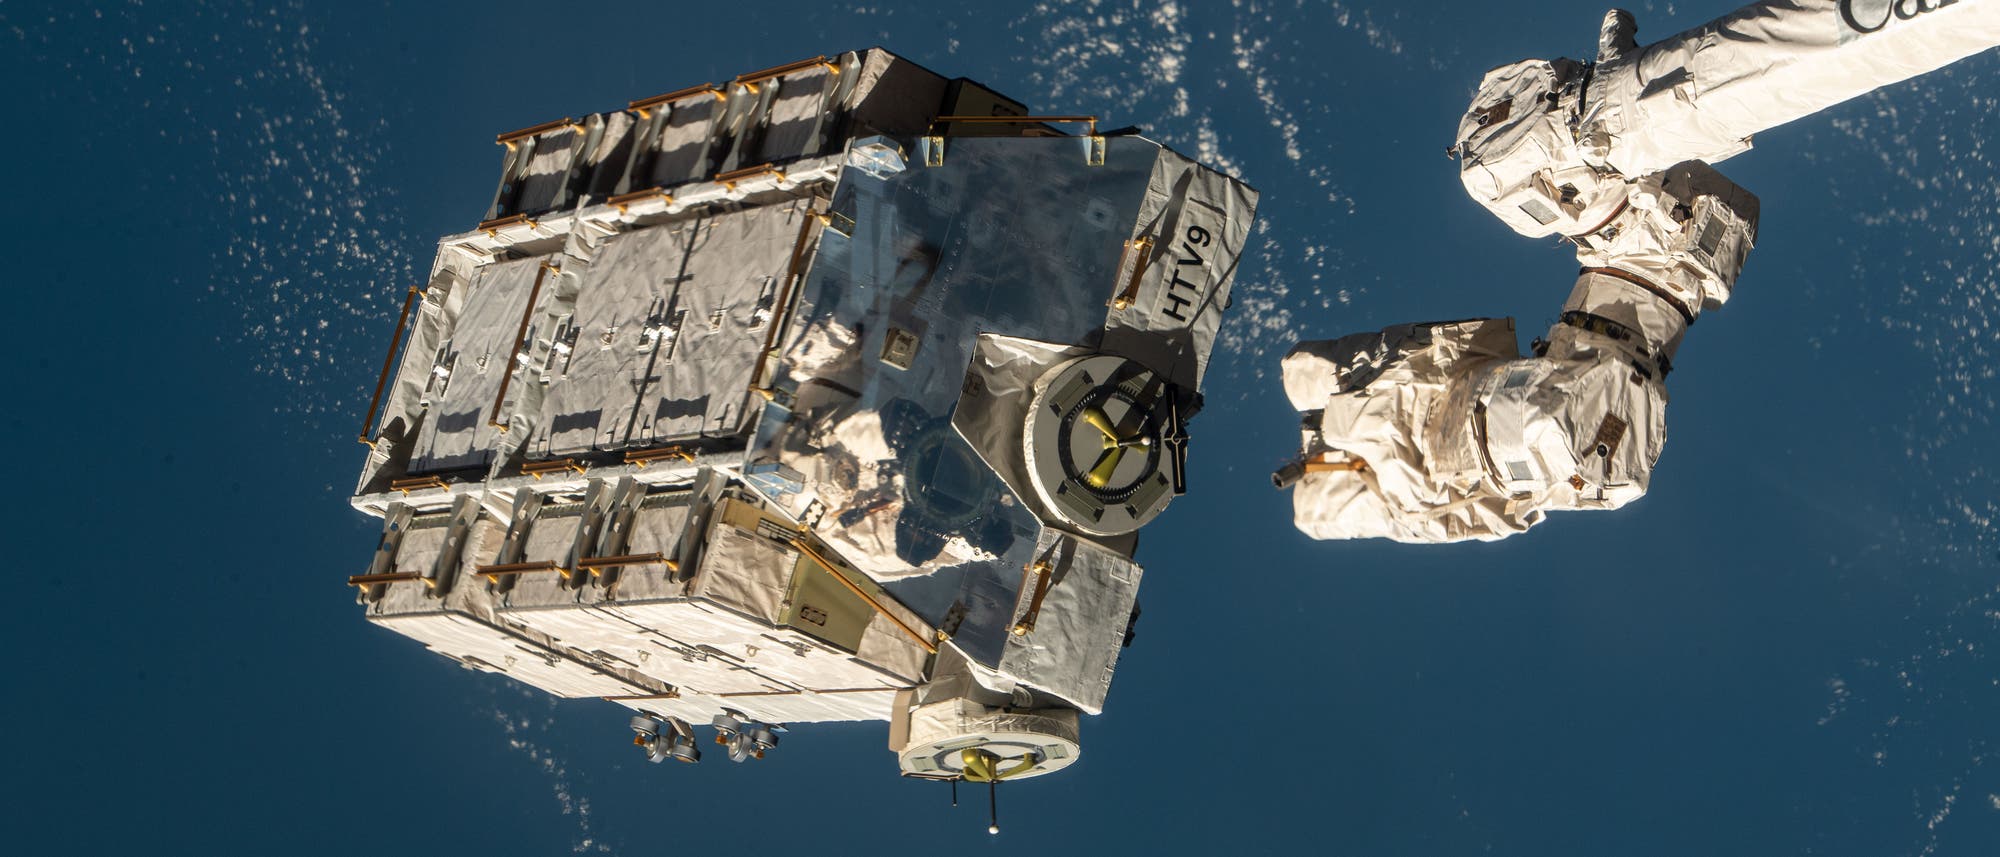 Das Batteriepaket, kurz nachdem es von der ISS abgekoppelt worden ist